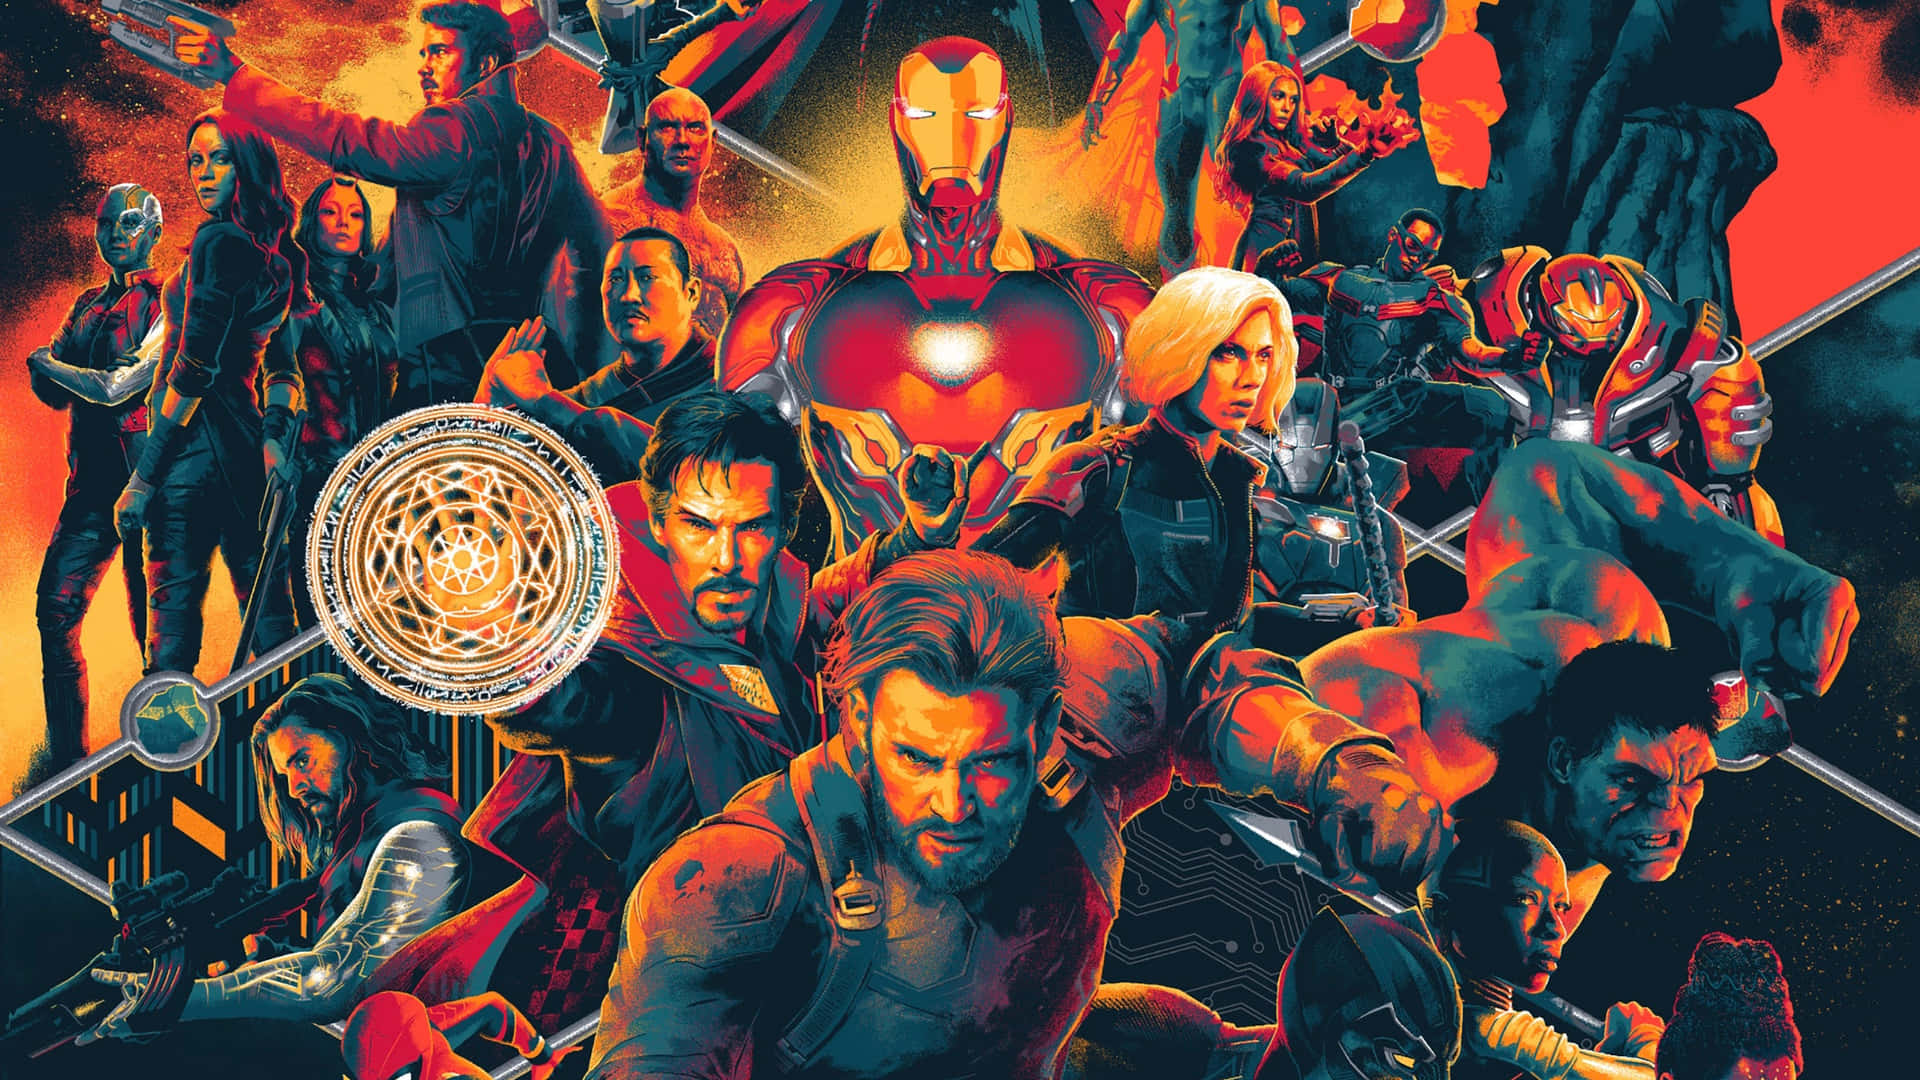 Avengers: Infinity War – “Avengers Assemble!” Wallpaper